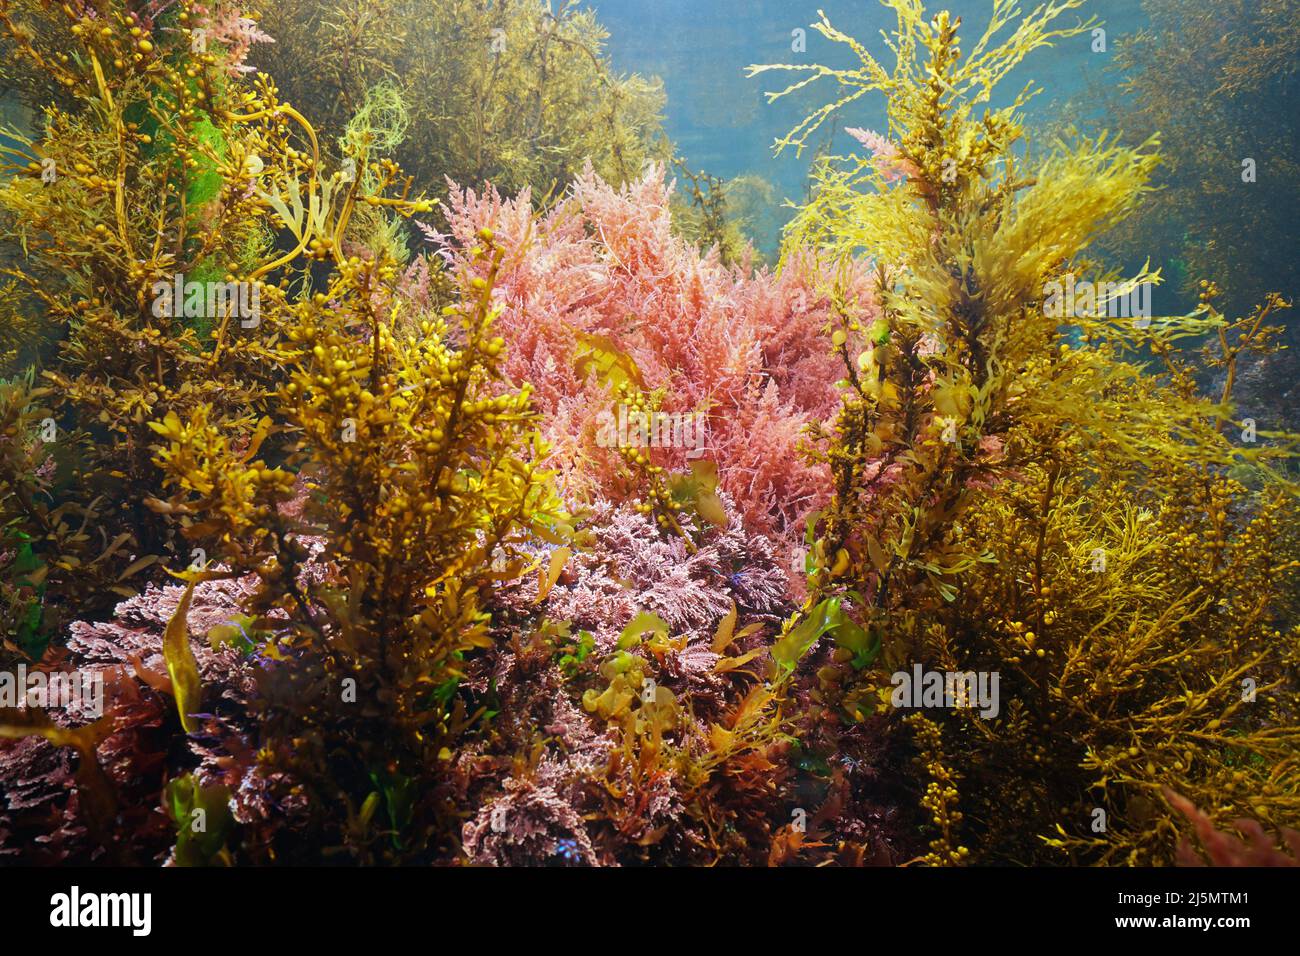 Varias algas marinas submarinas en el océano, algas del Atlántico este, España Foto de stock